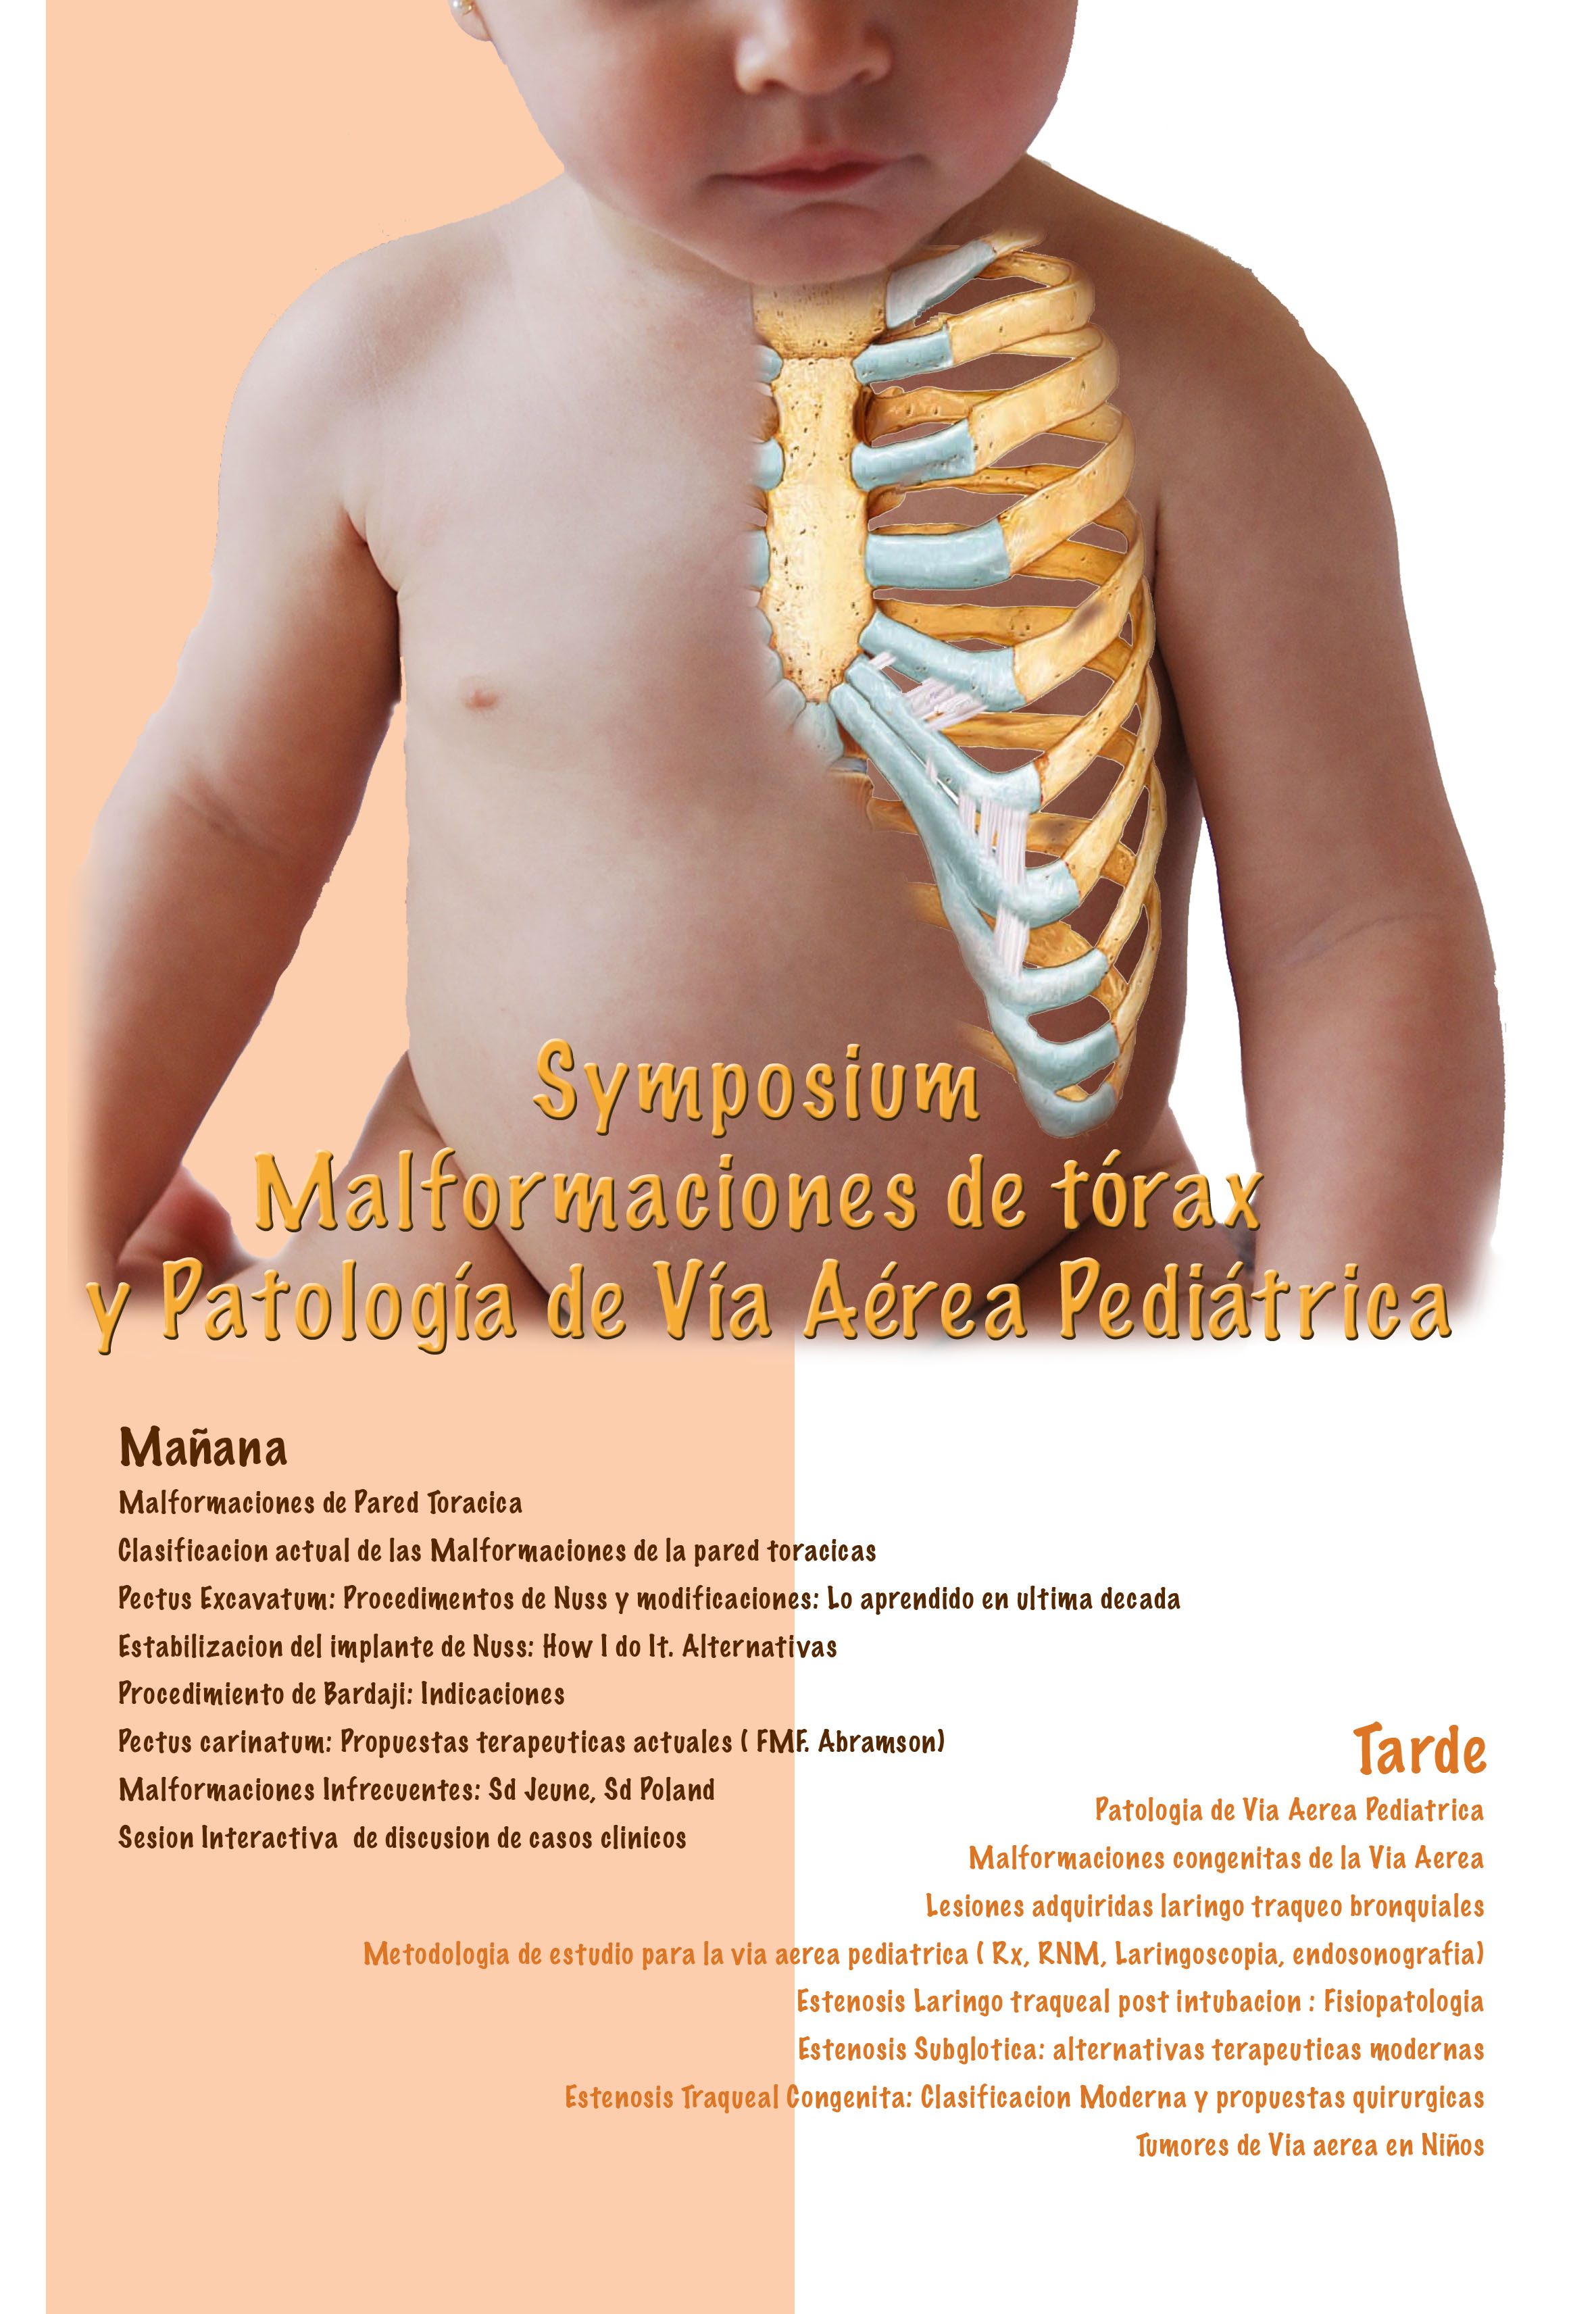 Symposium Malformaciones de tórax y Patología de vía Aérea Pediátrica